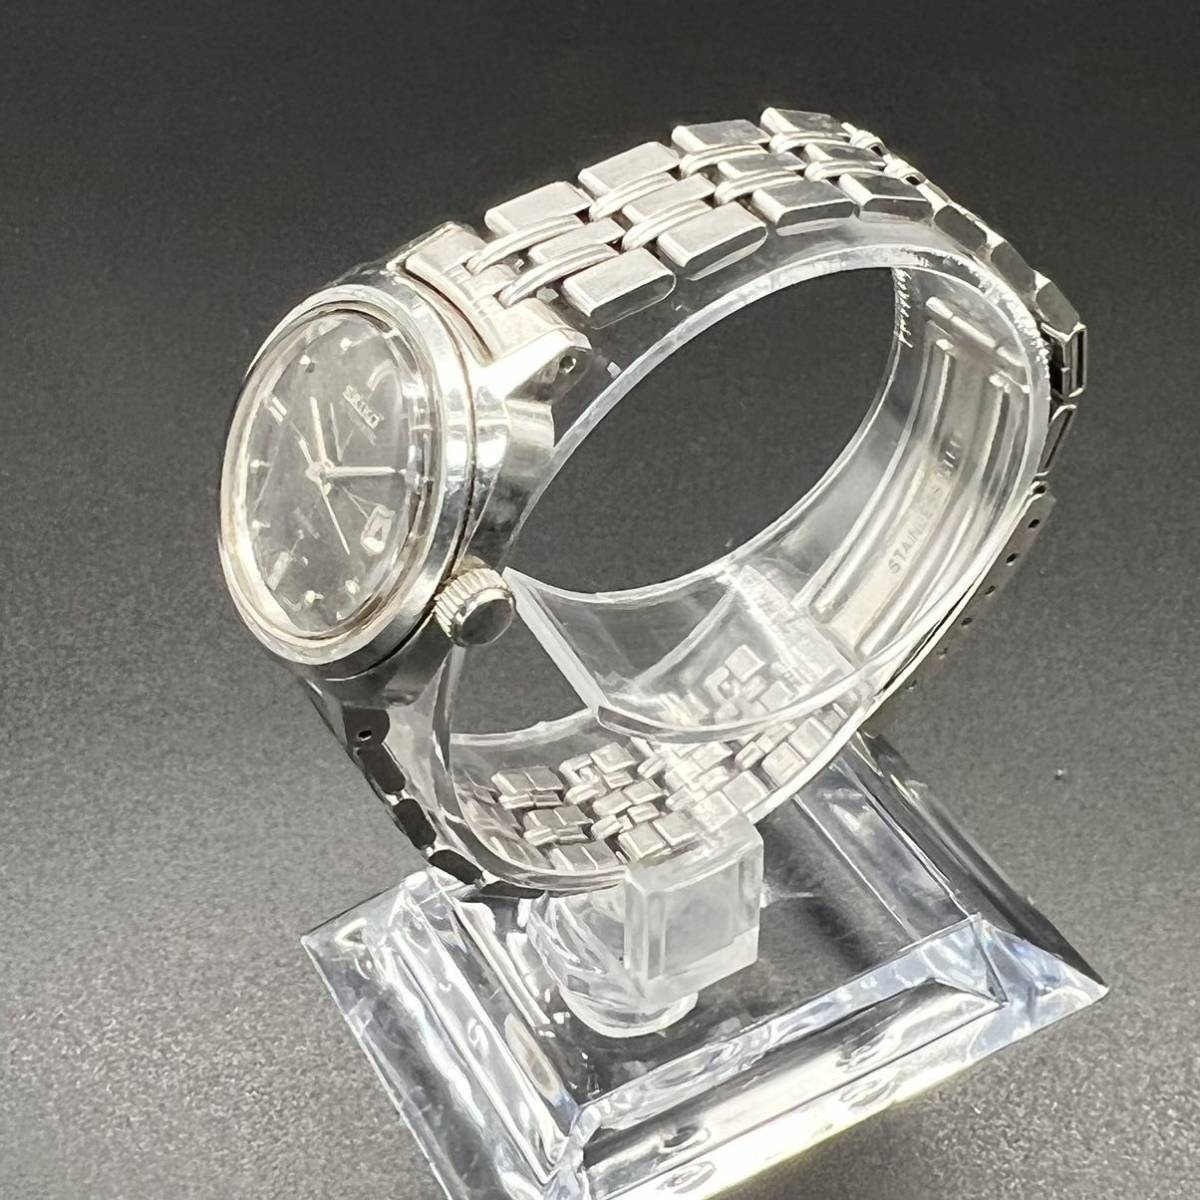 稼働品 SEIKO セイコー automatic自動巻き 腕時計 2205-0010 レディース腕時計 21jewels 21石 W八52